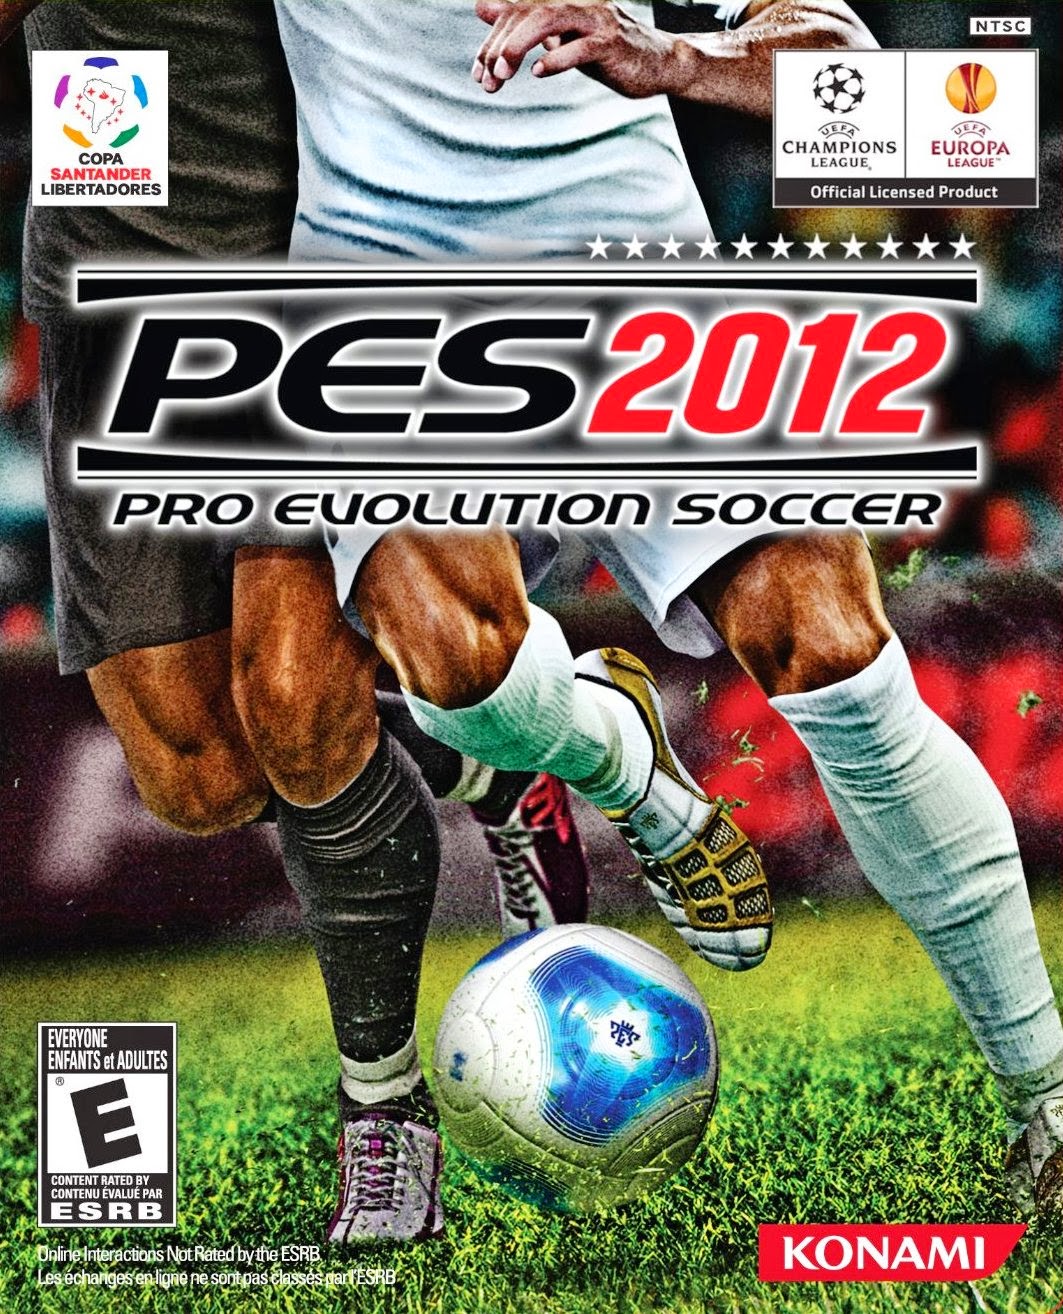 Pro evolution soccer 6 download torrent game